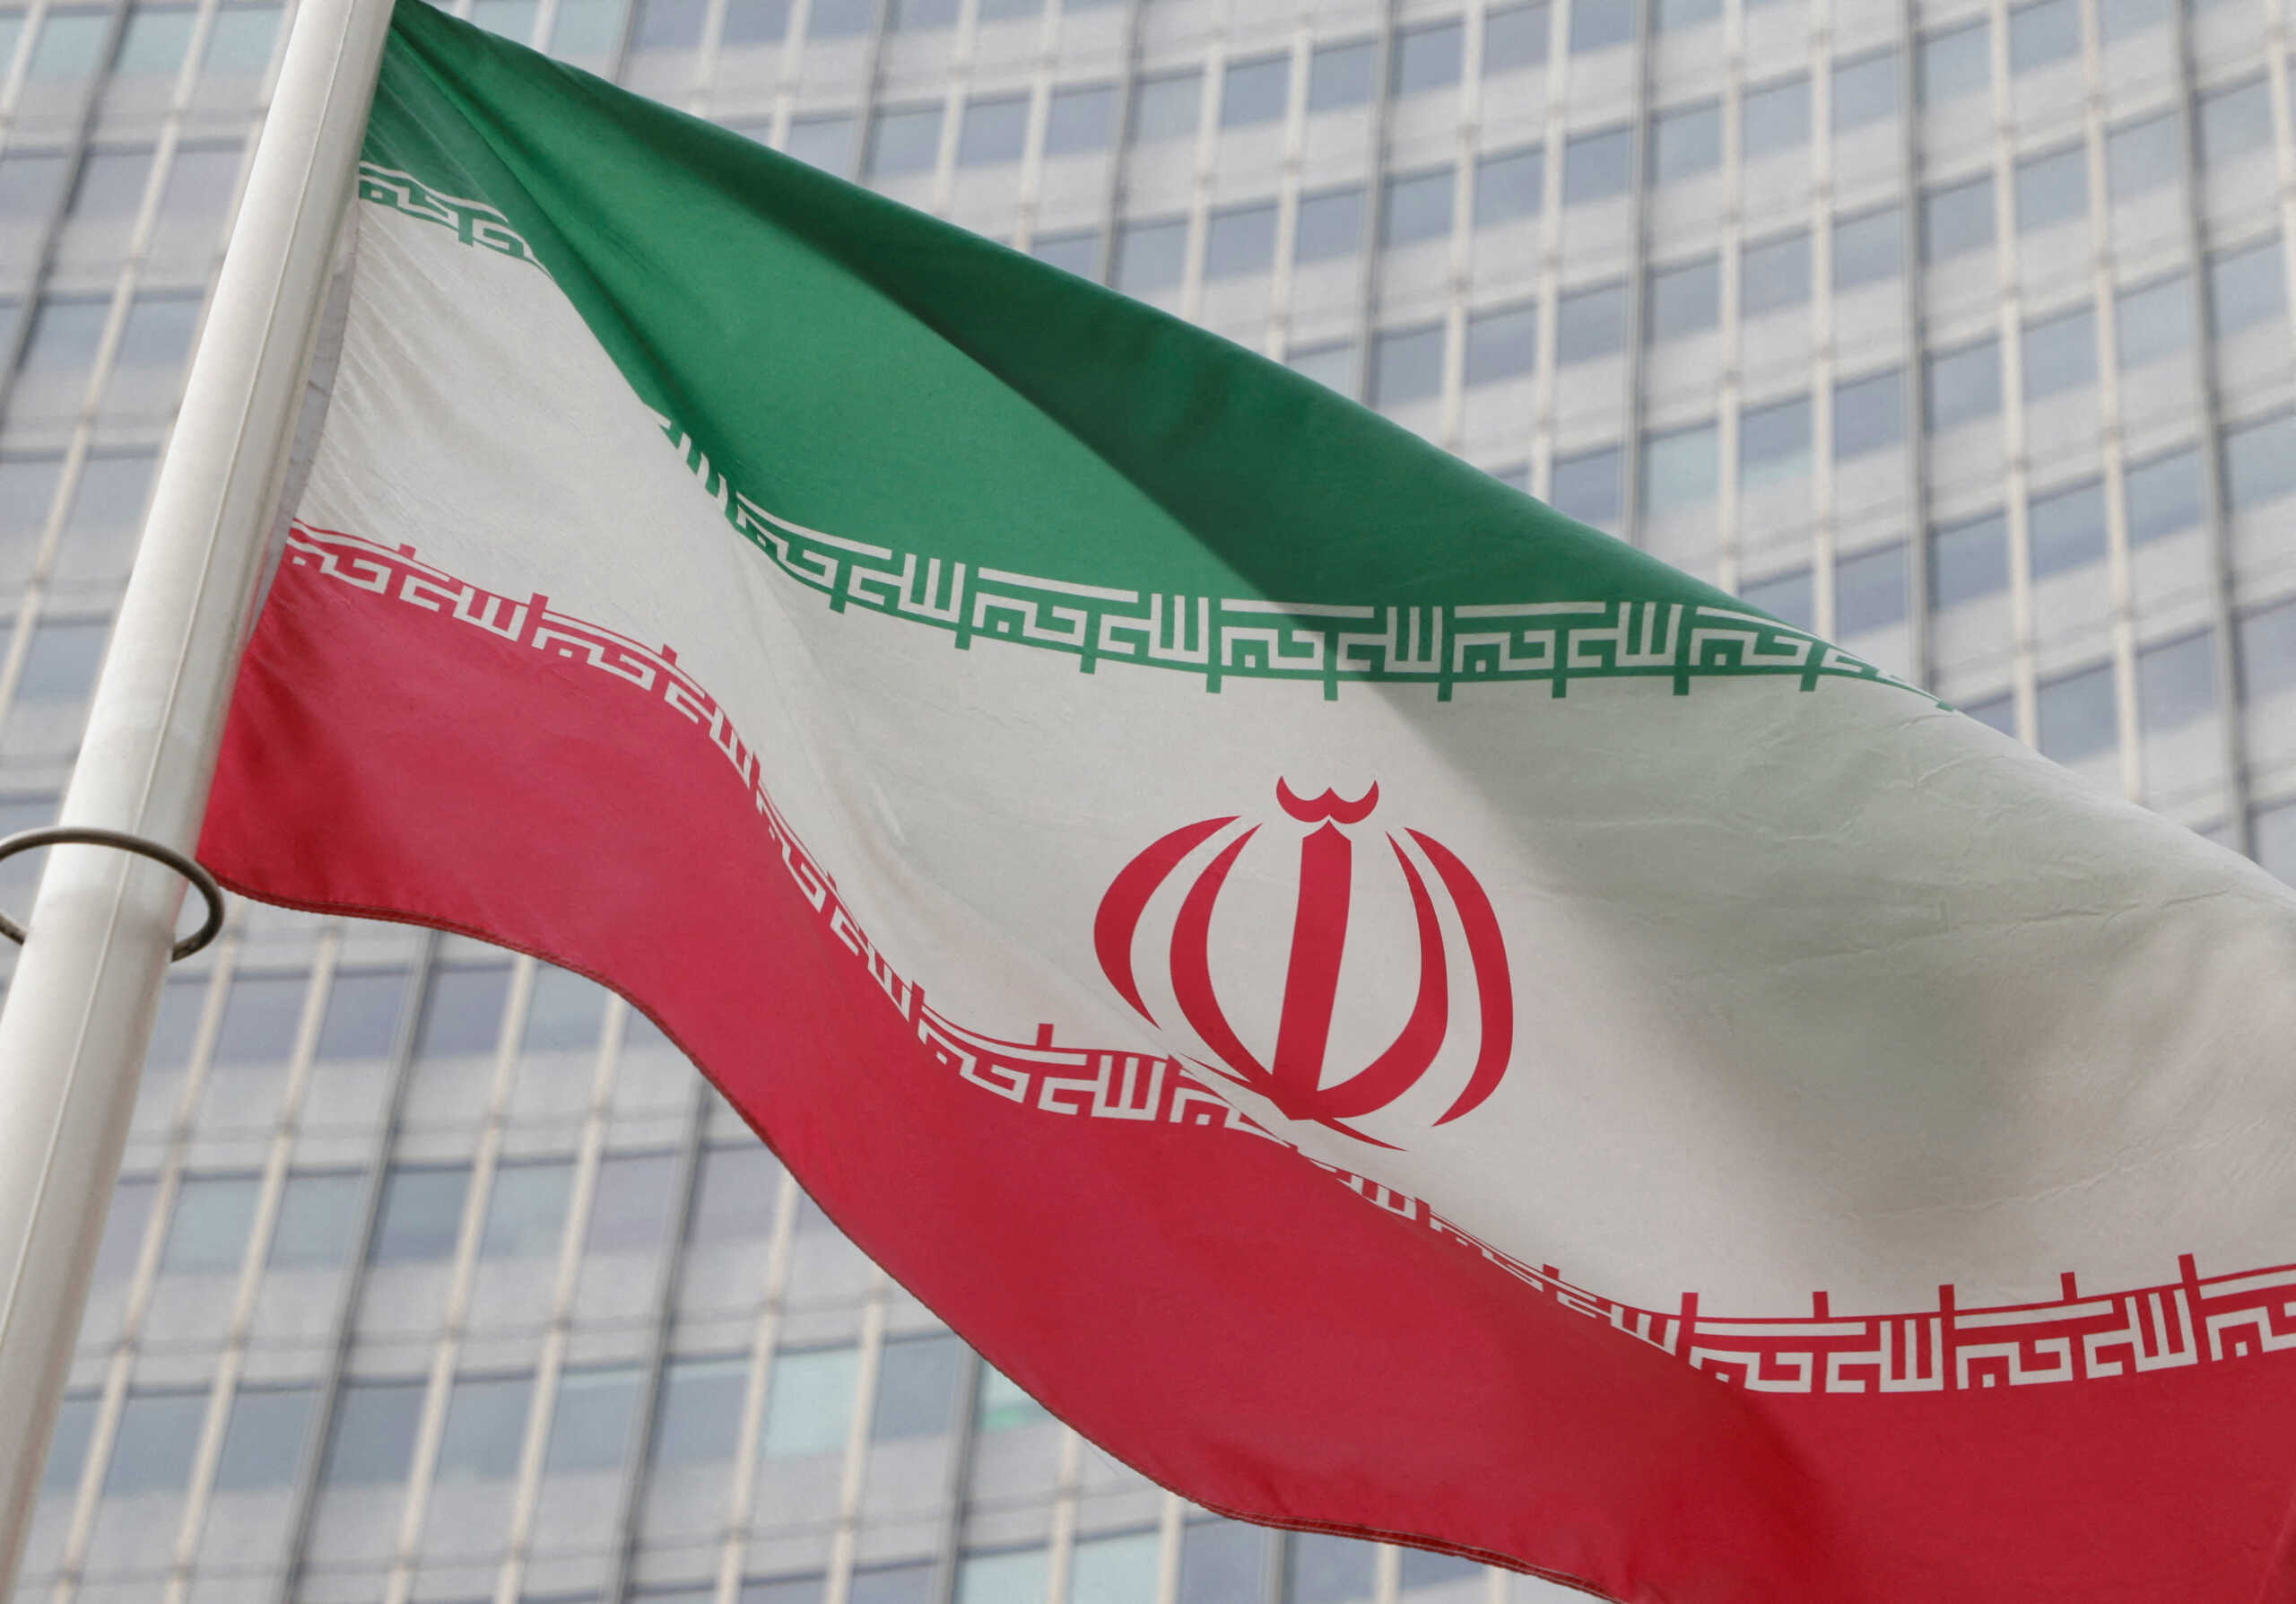 Τρομοκρατική επίθεση στου Ψυρρή: Η πρεσβεία του Ιράν διαψεύδει τις φήμες των «σιωνιστικών πηγών»